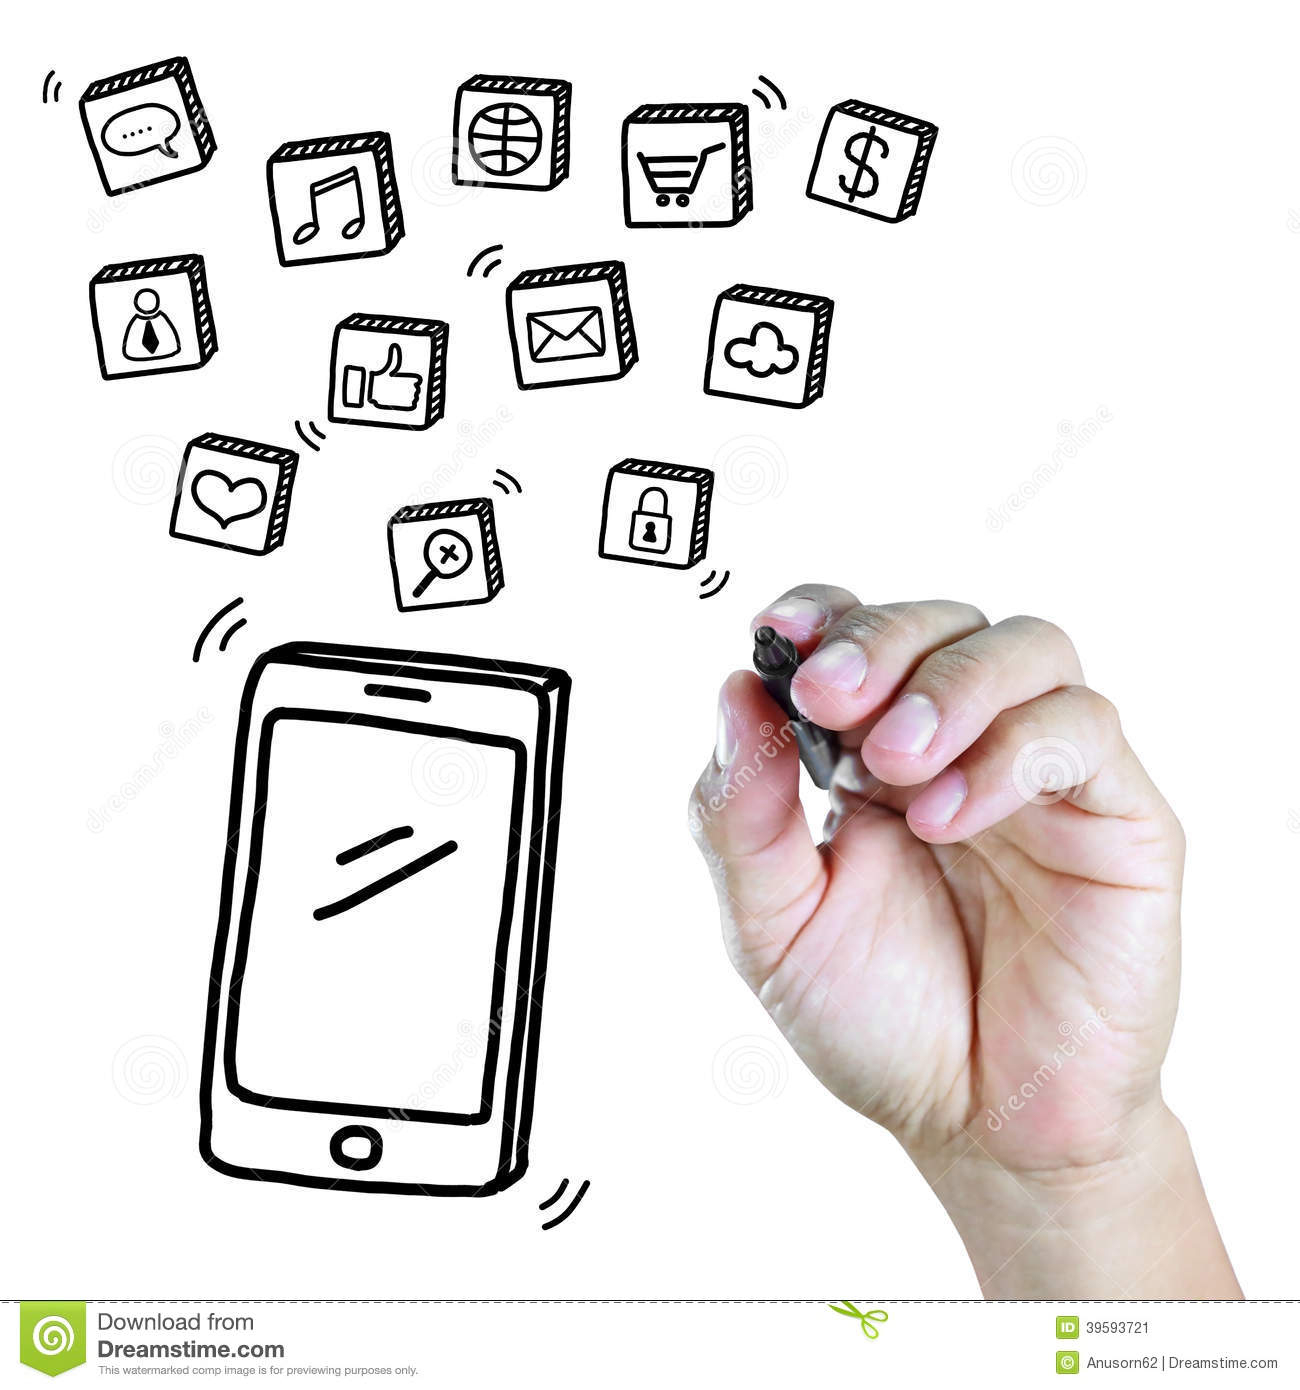 Téléphone Portable De Dessin De Main Avec Le Media Social tout Dessin Telephone Portable